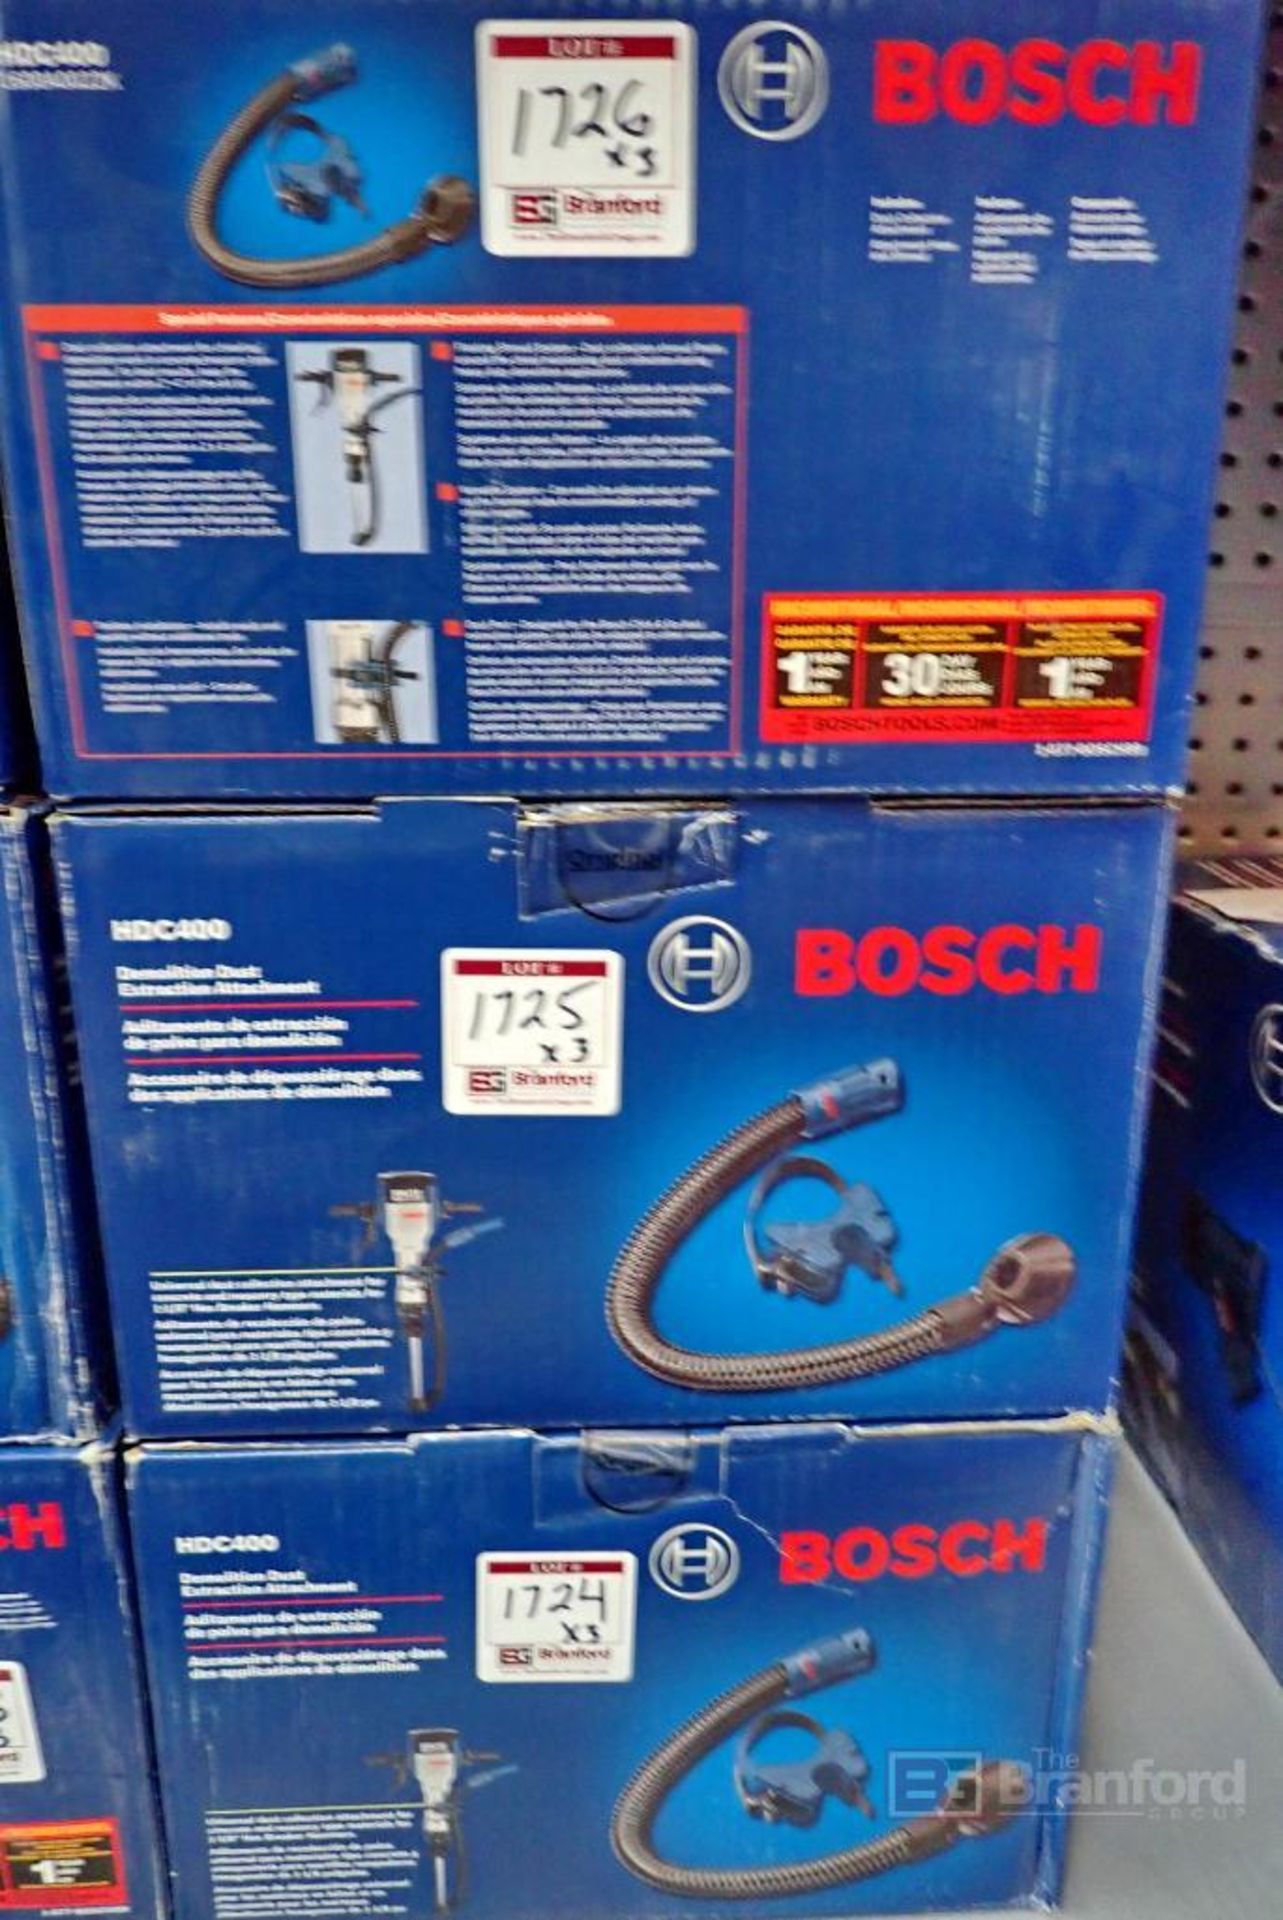 (3) Bosch HDC400 Demolition Dust Extraction Attachments - Bild 2 aus 4